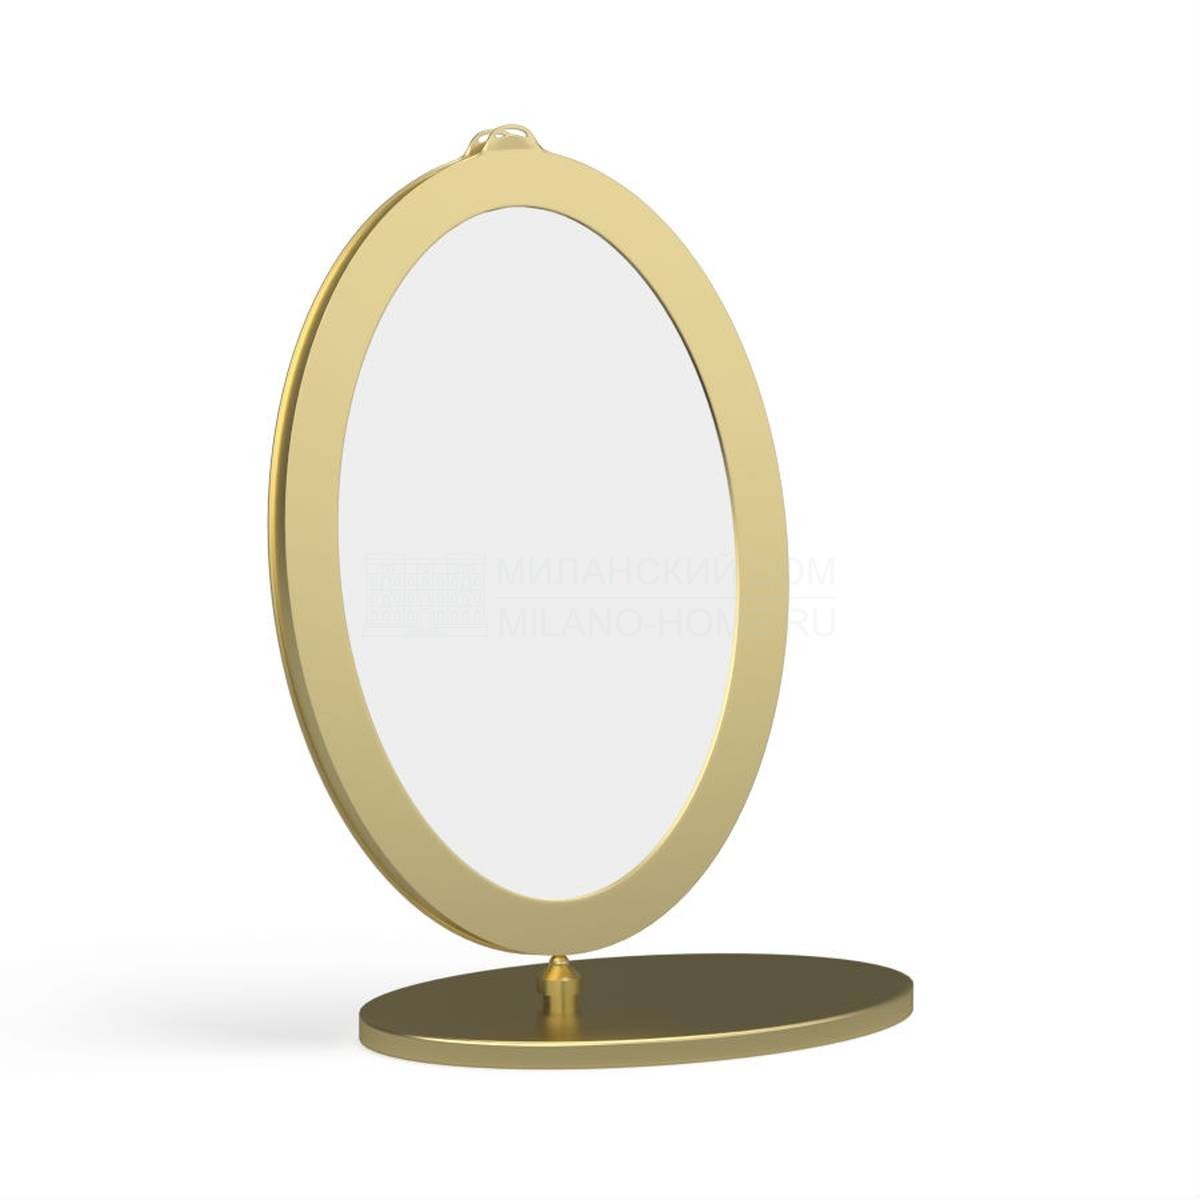 Зеркало настольное V0403 mirror из Италии фабрики LCI DECORA